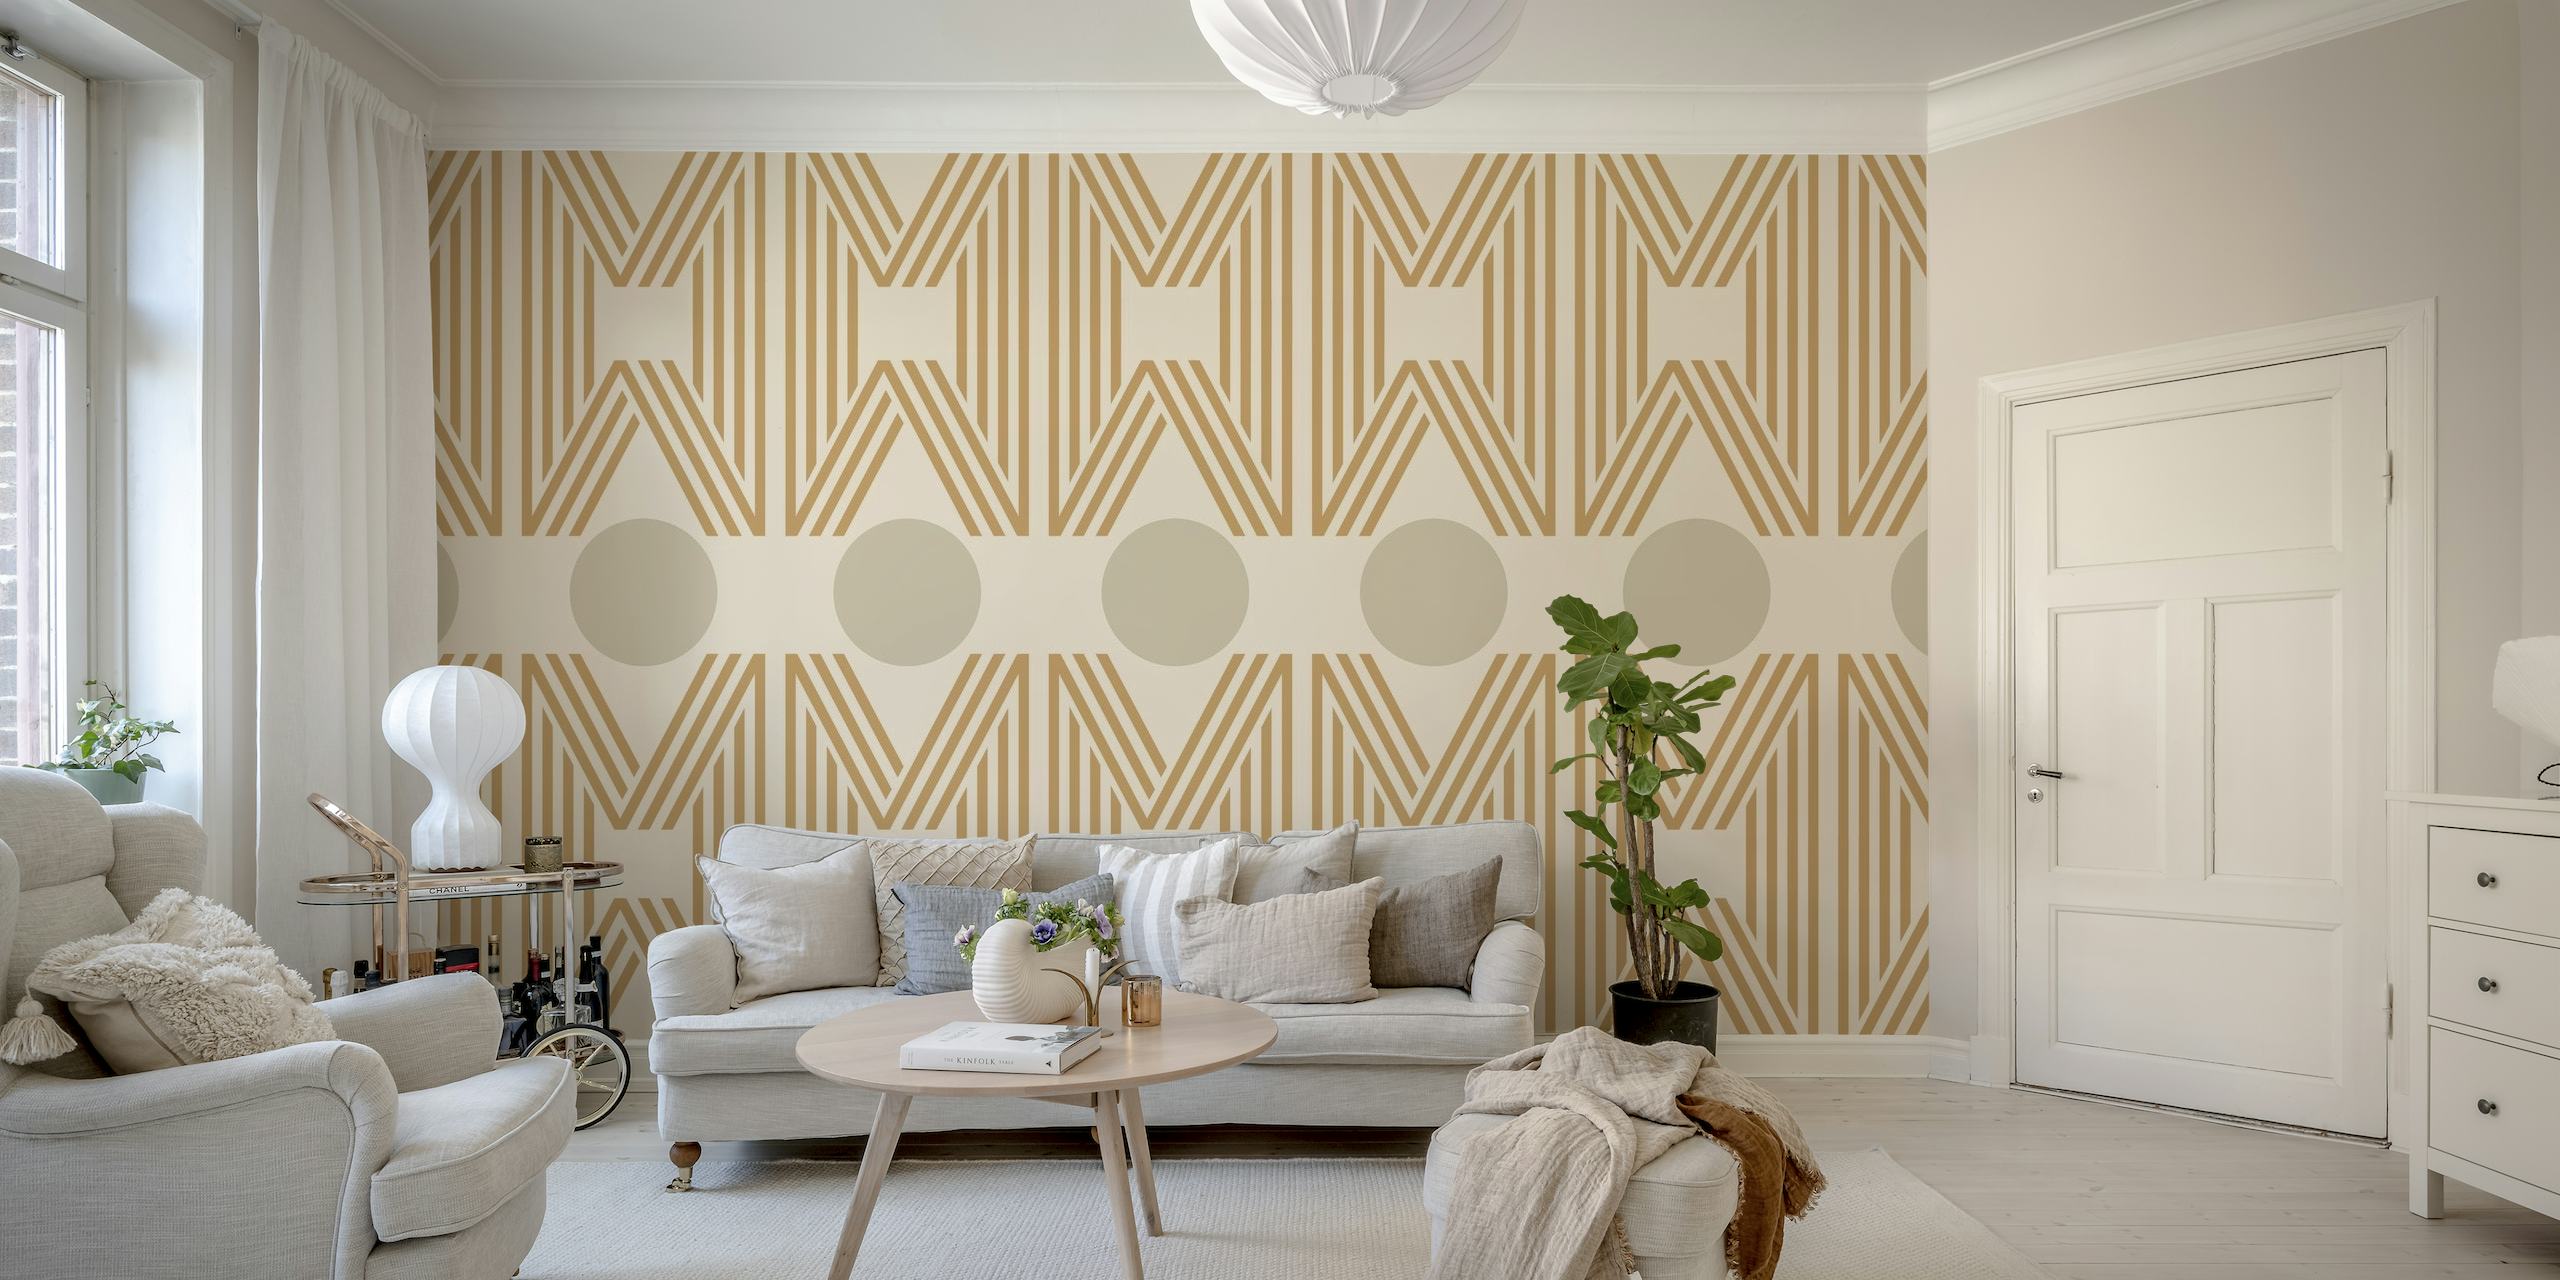 Design elegante de mural de parede geométrico minimalista japonês em tons suaves e neutros